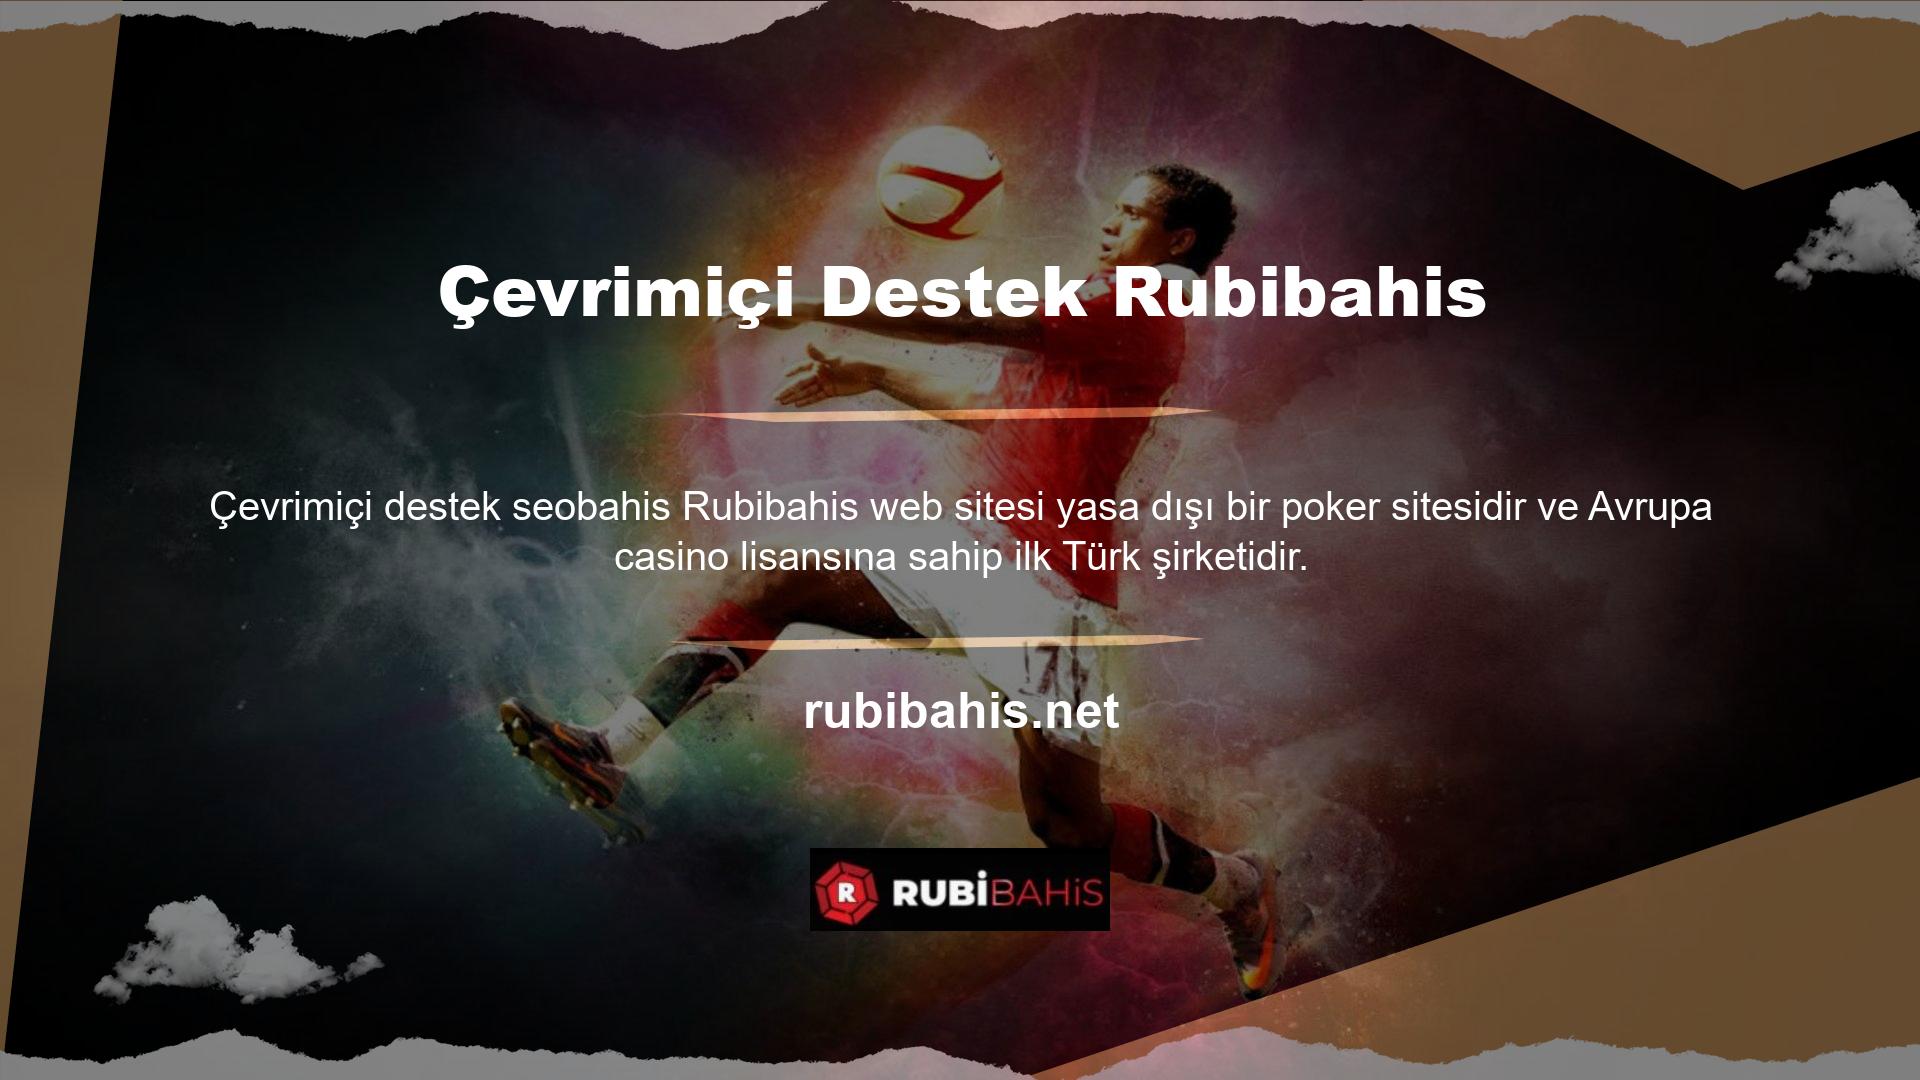 Rubibahis, Türk kullanıcılarına yüksek kaliteli canlı bahis, spor bahisleri ve casino oyun hizmetleri sunan güvenilir bir şirkettir